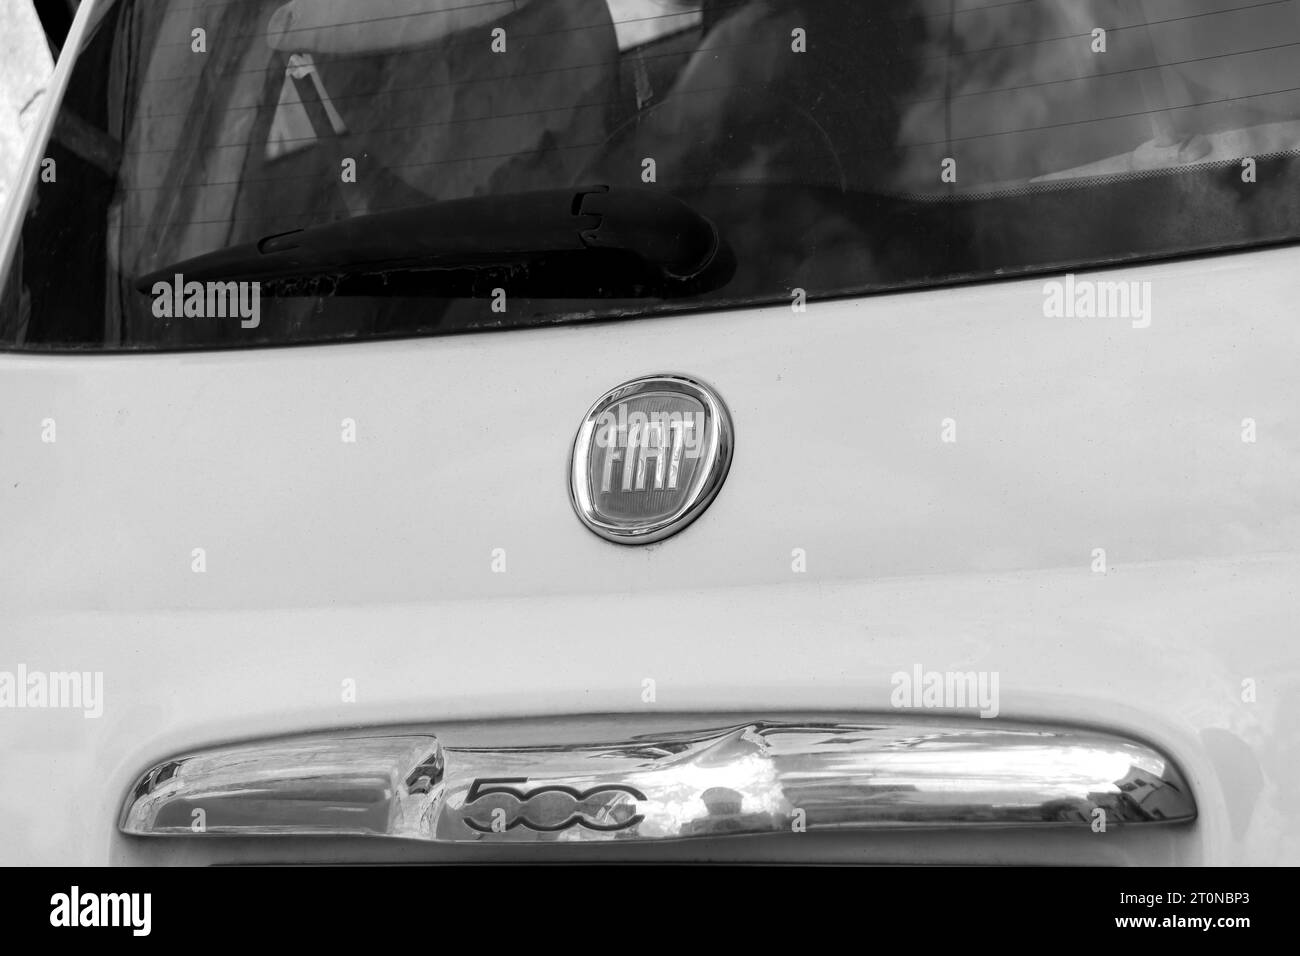 Fiat Automobiles, un fabricante italiano de automóviles que cuenta con el logotipo del icono en la parte trasera de un automóvil urbano Fiat 500 blanco Foto de stock